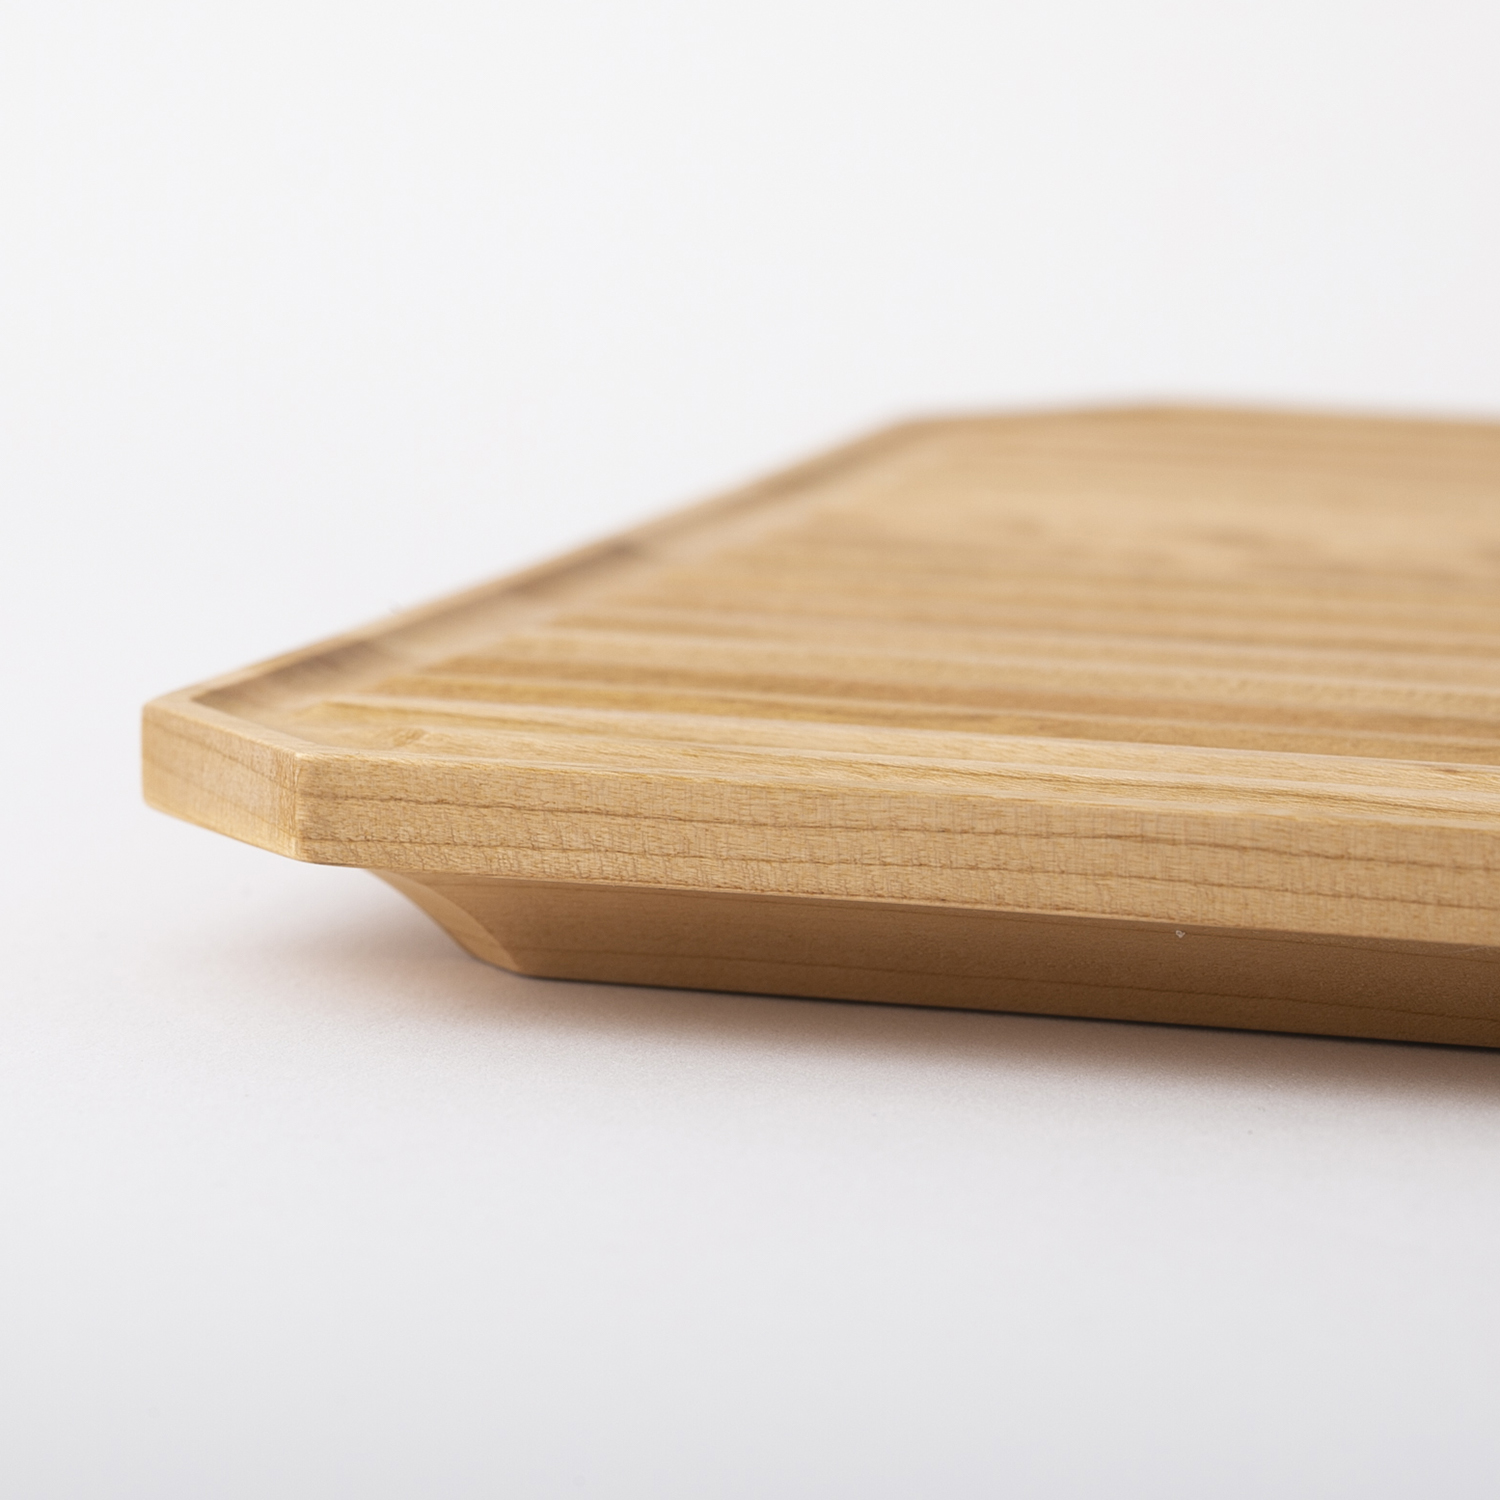 四十沢木材工芸/KITO ブランチボード